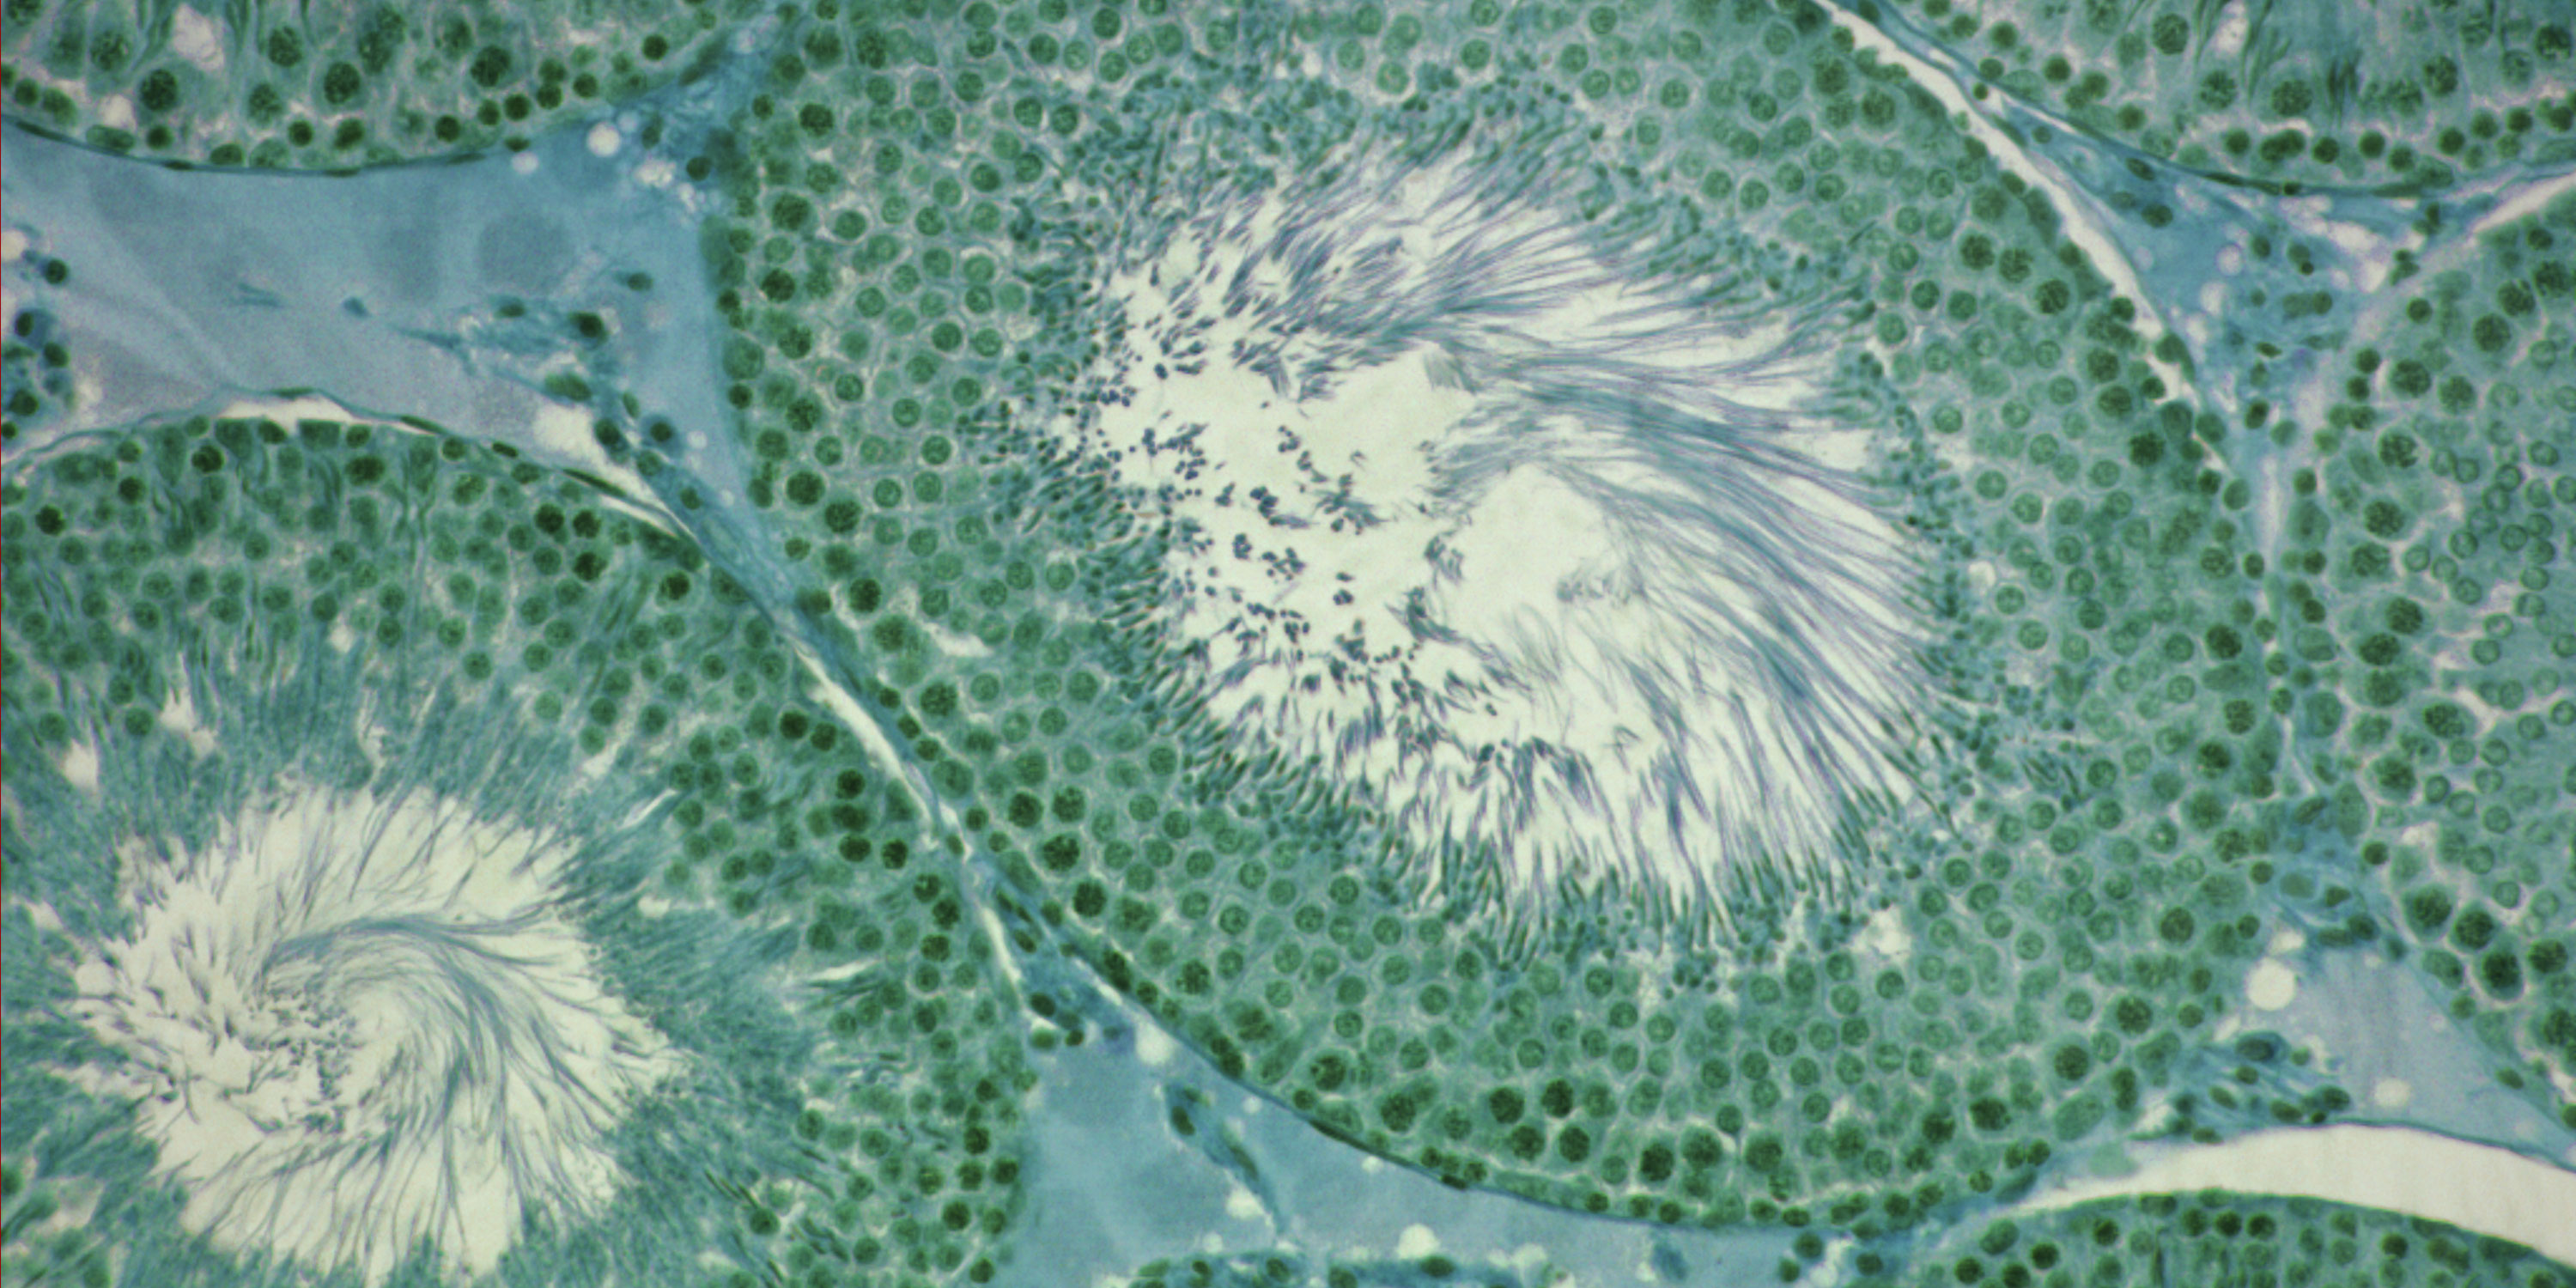 Mikroskopbillede af en rottes testikler. Det indgår i DTU forskning i hormonforstyrrende stoffers skadelige påvirkninger. Og undersøgelser af, hvordan selv små doser kan have markant negativ effekt, hvis de optræder i en kemikaliecocktail.